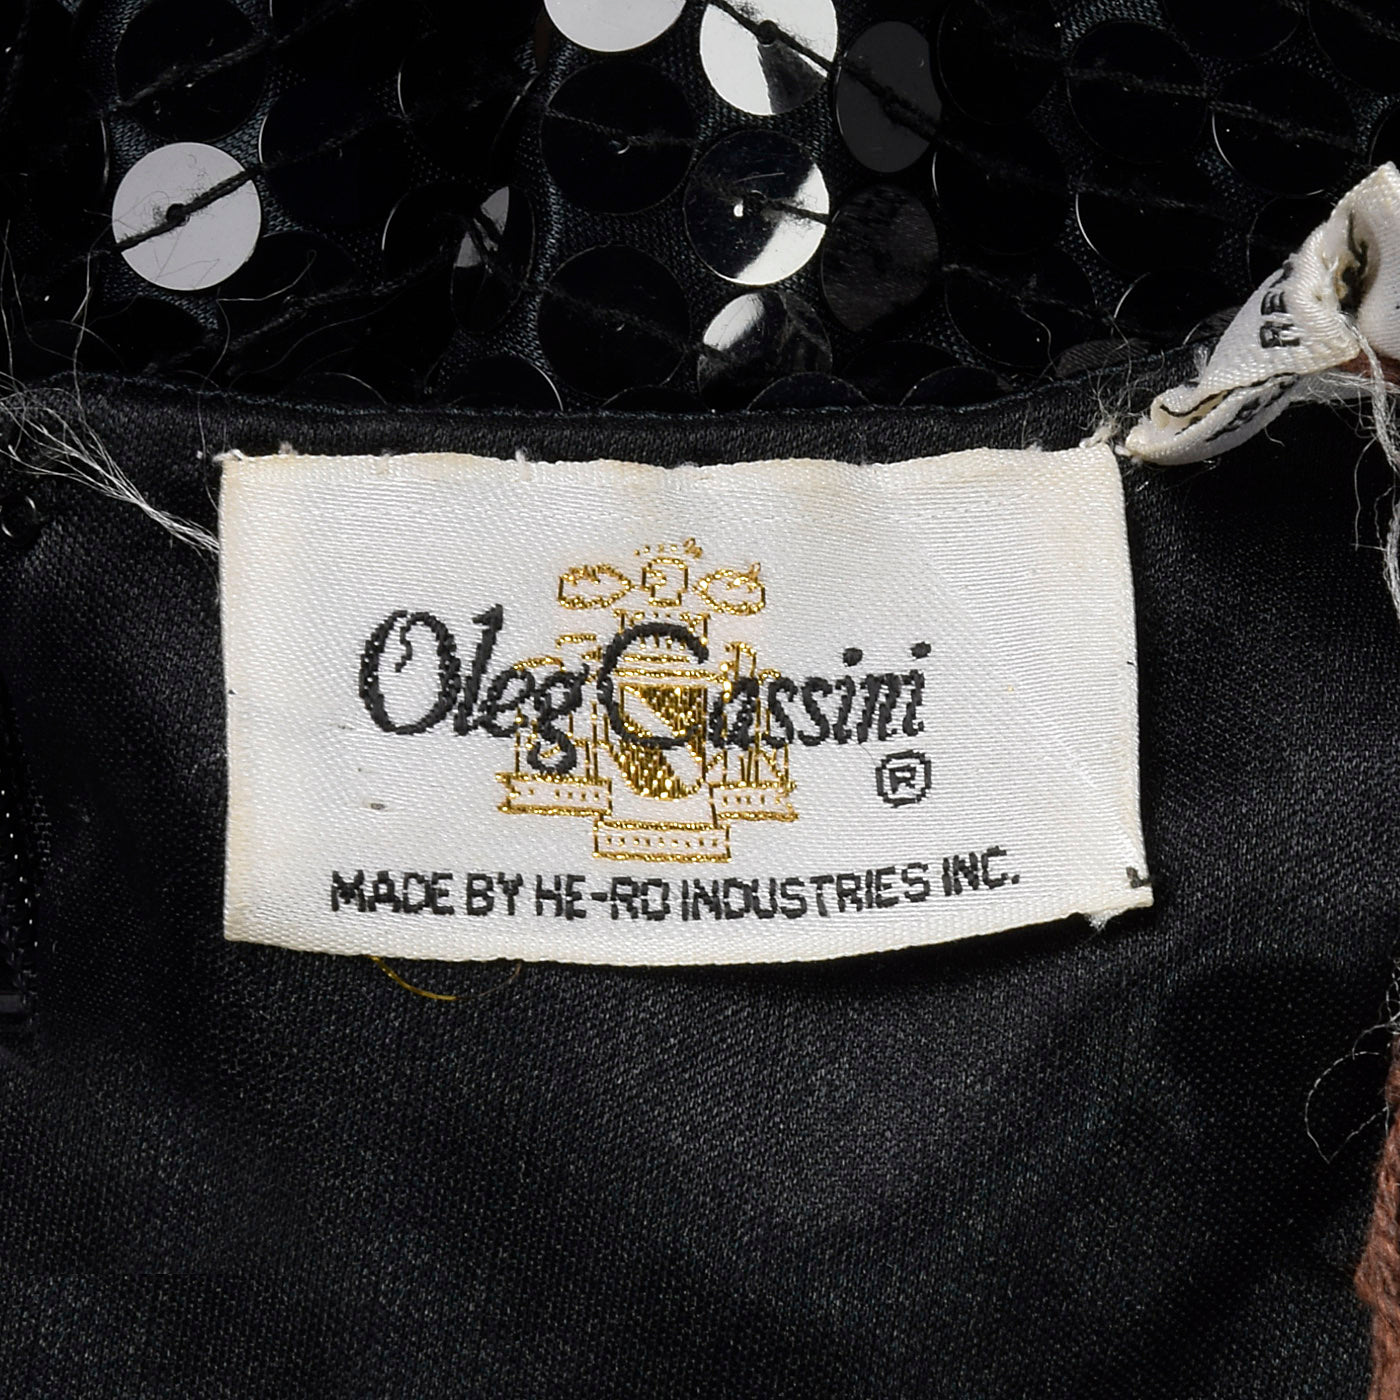 1980s Oleg Cassini Black Sequin Dress